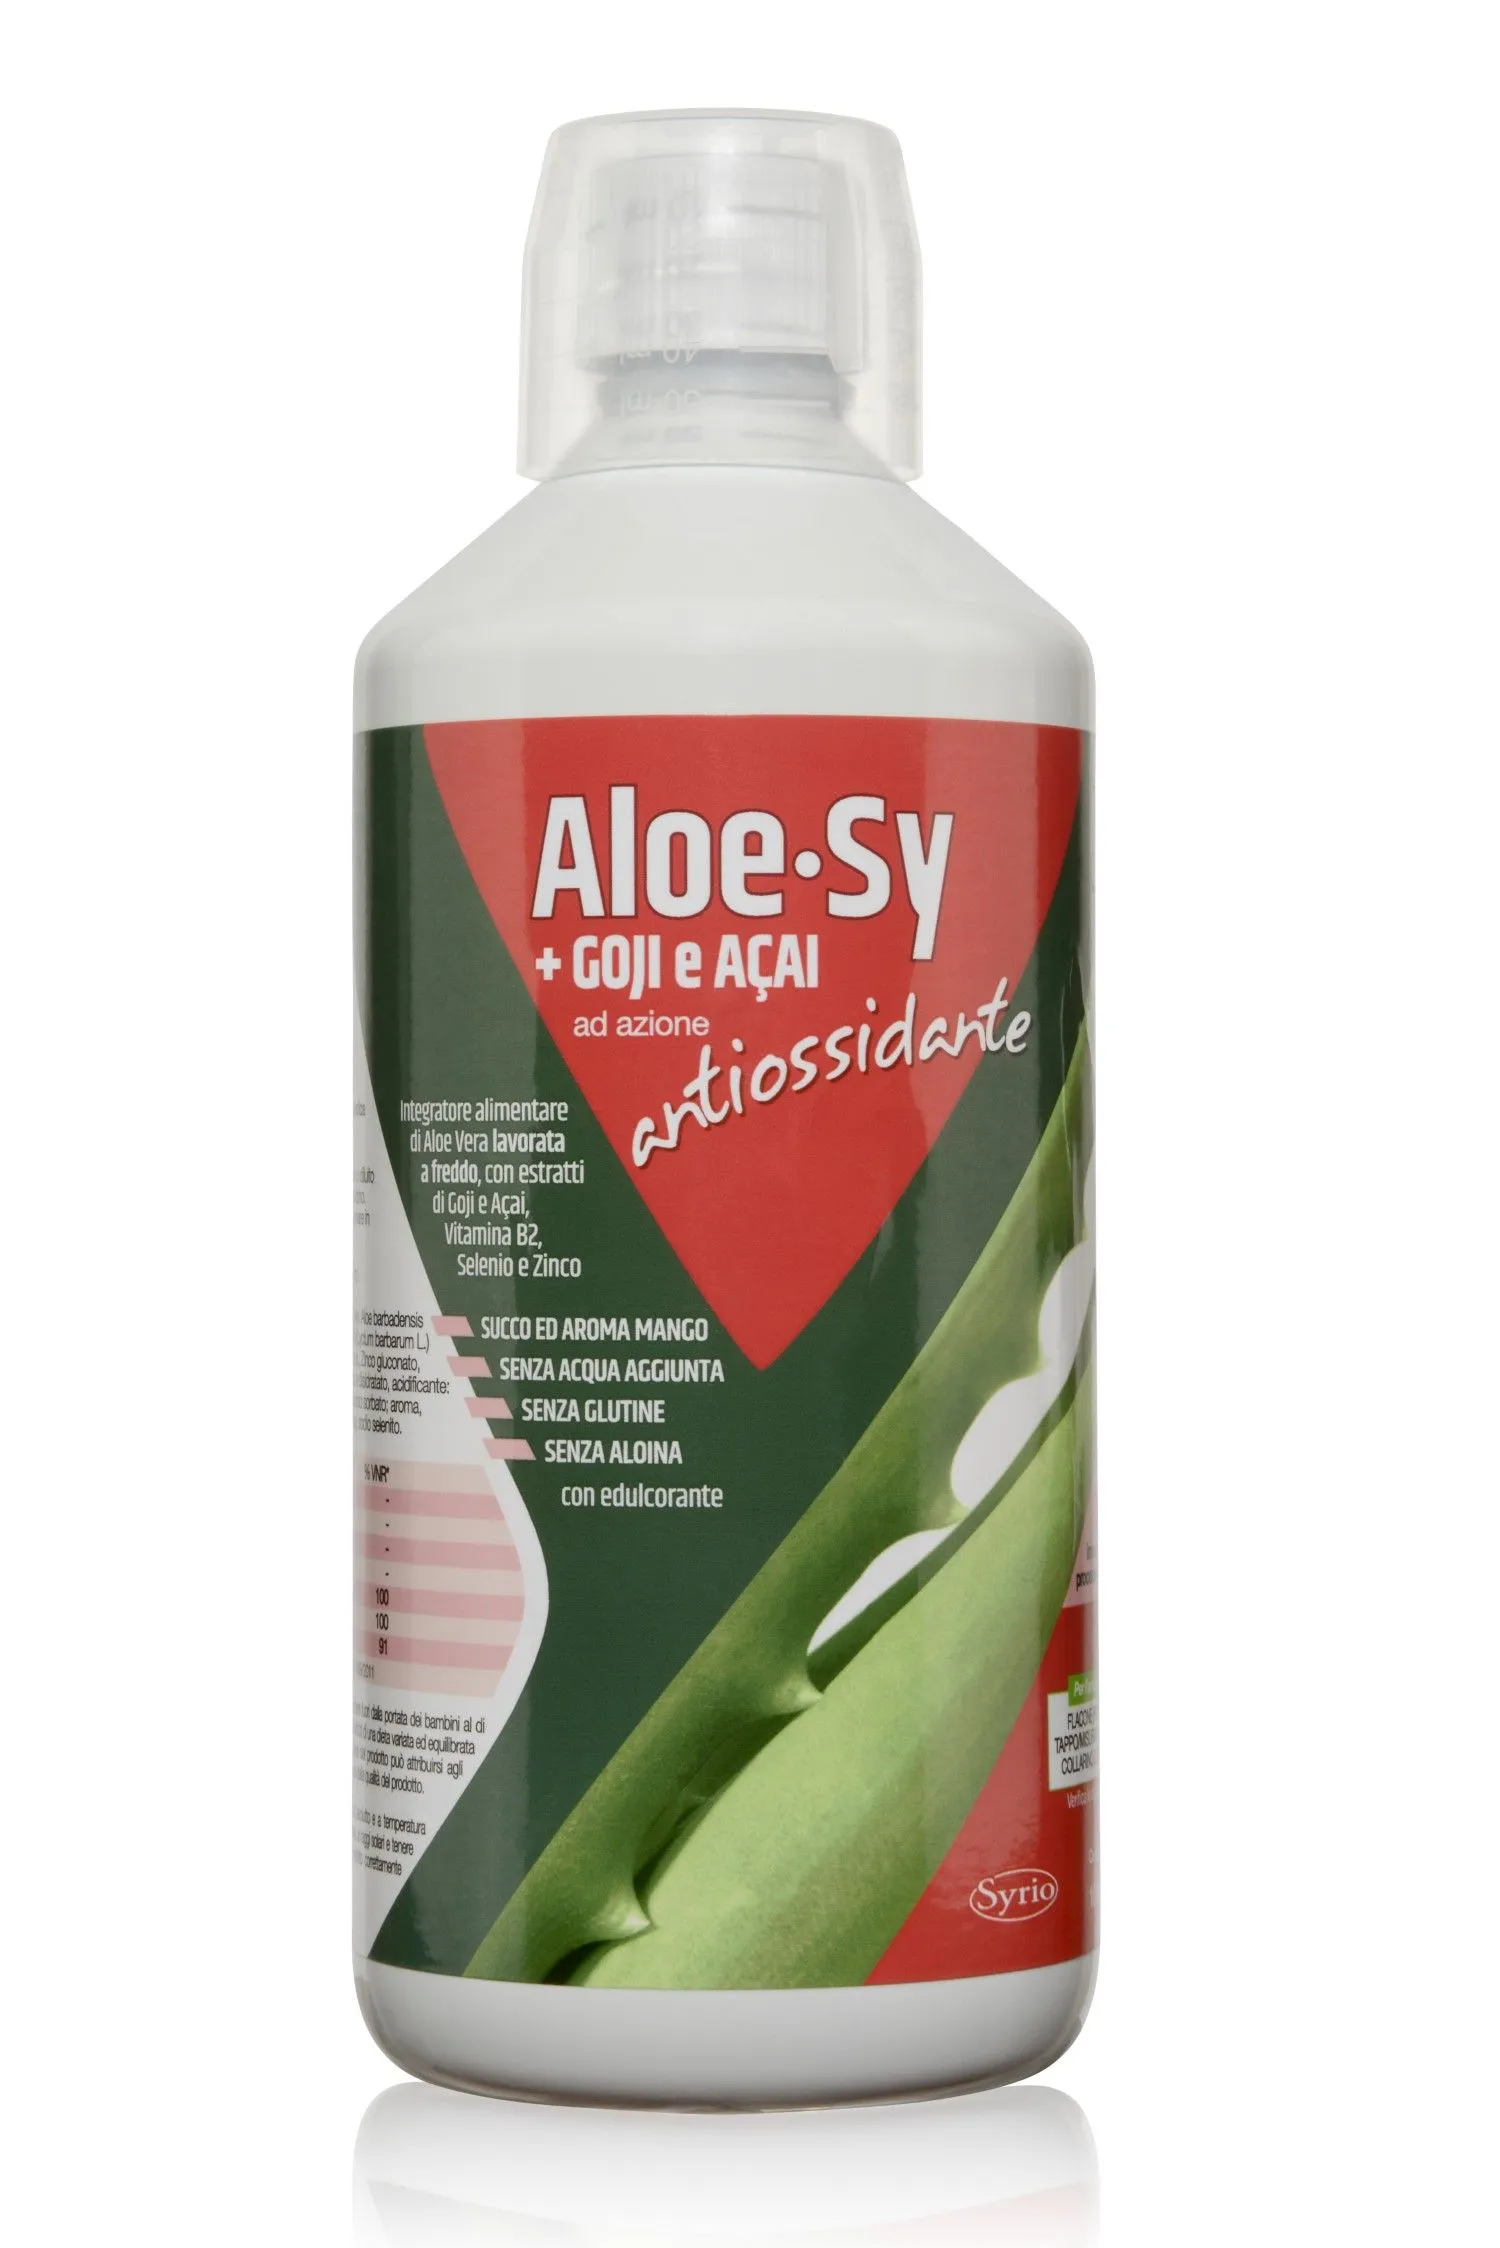  Aloe-sy Goji Acai Integratore Antiossidante 1 Litro